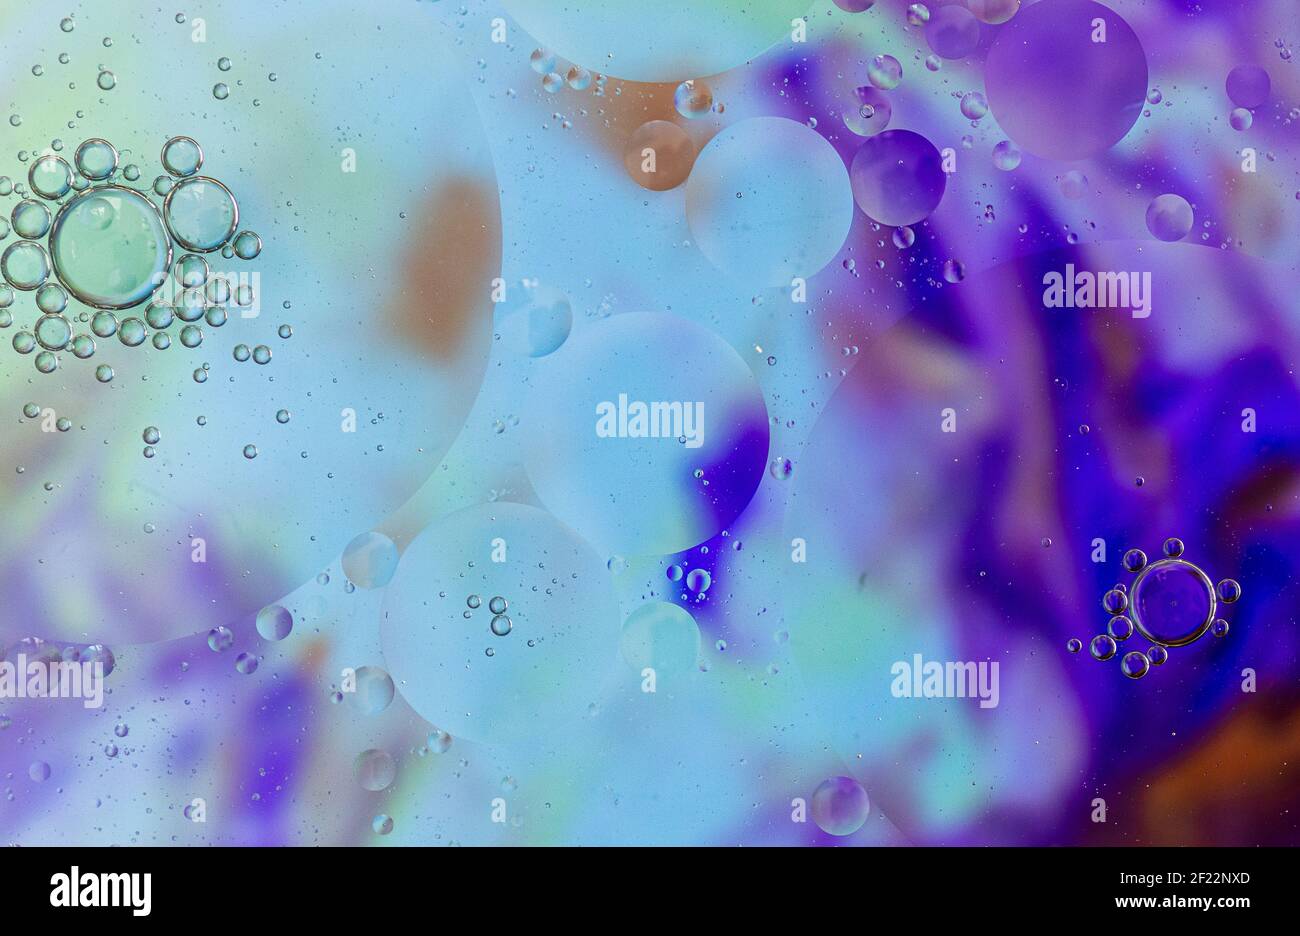 Bulles sur fond coloré, bulles d'huile sur fond violet, orange, bleu, savon et huile, bulles d'huile dans l'eau avec fond coloré Banque D'Images